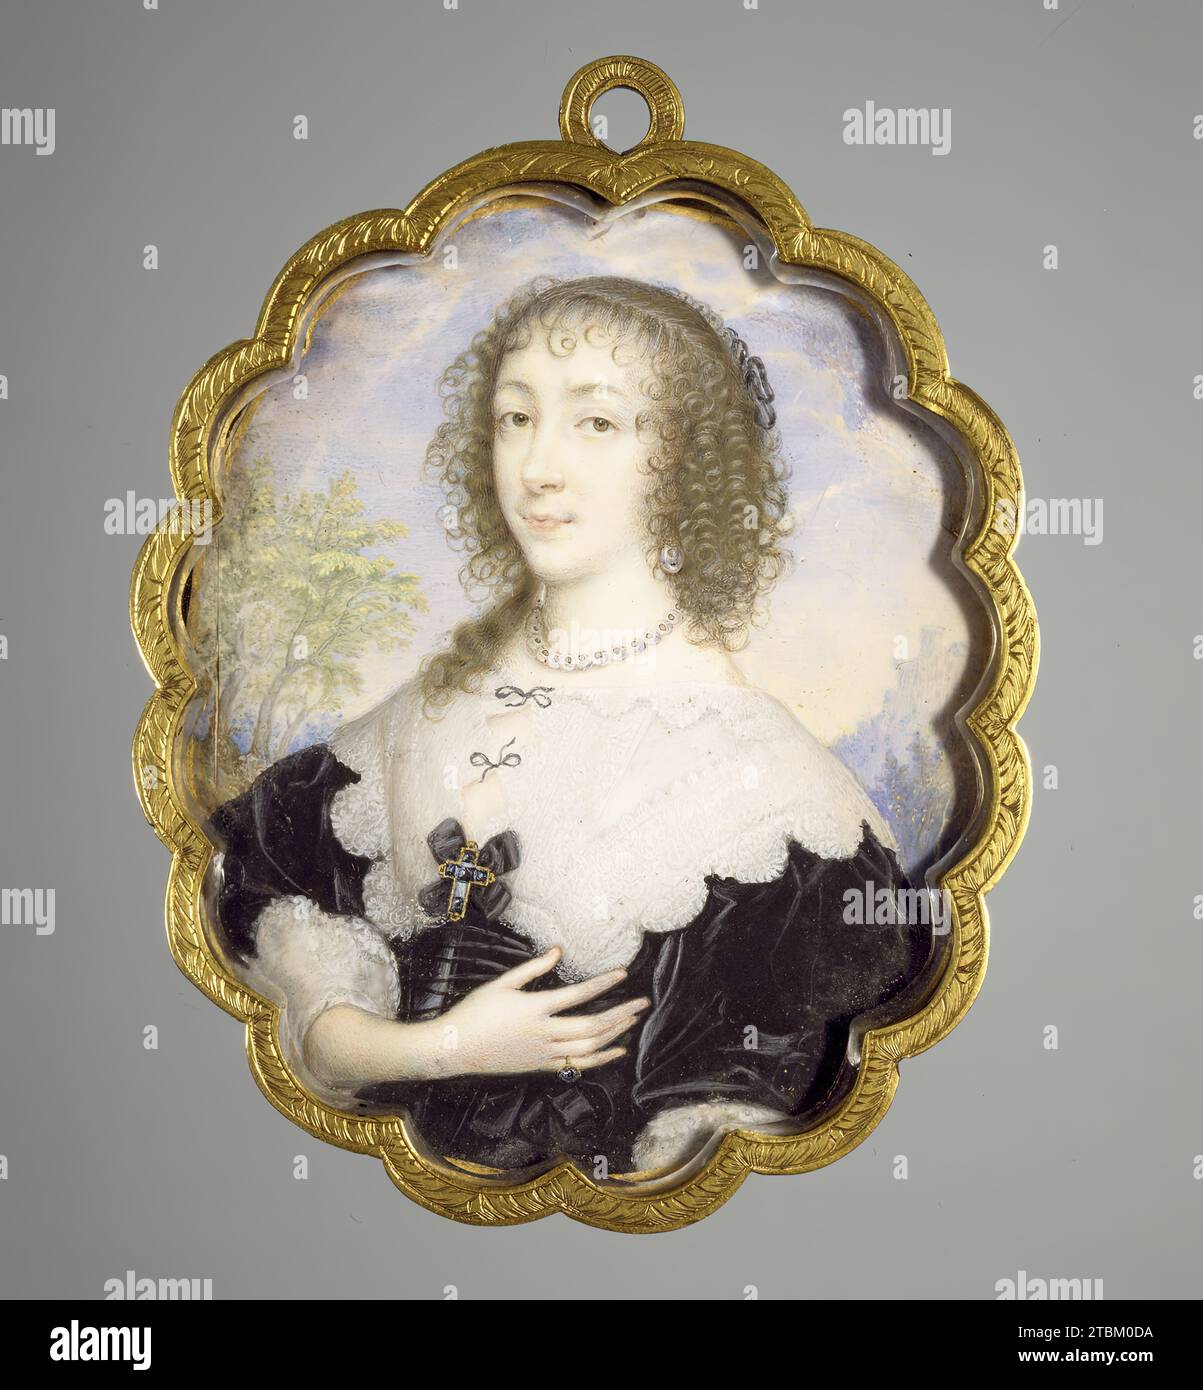 Königin Henrietta Maria, 1635. Henrietta Maria (1609–1669) war die in Frankreich geborene Königin von England und Ehefrau von König Karl I. Die berühmtesten lebensgroßen Porträts von ihr stammen von dem großen flämischen Maler Anthony van Dyck, dessen eleganter Stil englische Porträtisten beeinflusste, darunter Hoskins, die sich auf Miniaturen spezialisierten. Im Gegensatz zu früheren englischen Porträtminiaturen enthält diese eine Art von Landschaftsdetails, die Van Dyck oft enthielt. Die Königin war katholisch in einem Land, das vollständig von protestantischen Kräften dominiert wurde. Sie trägt ein Juwelenkreuz, ein Charakteristikum Stockfoto